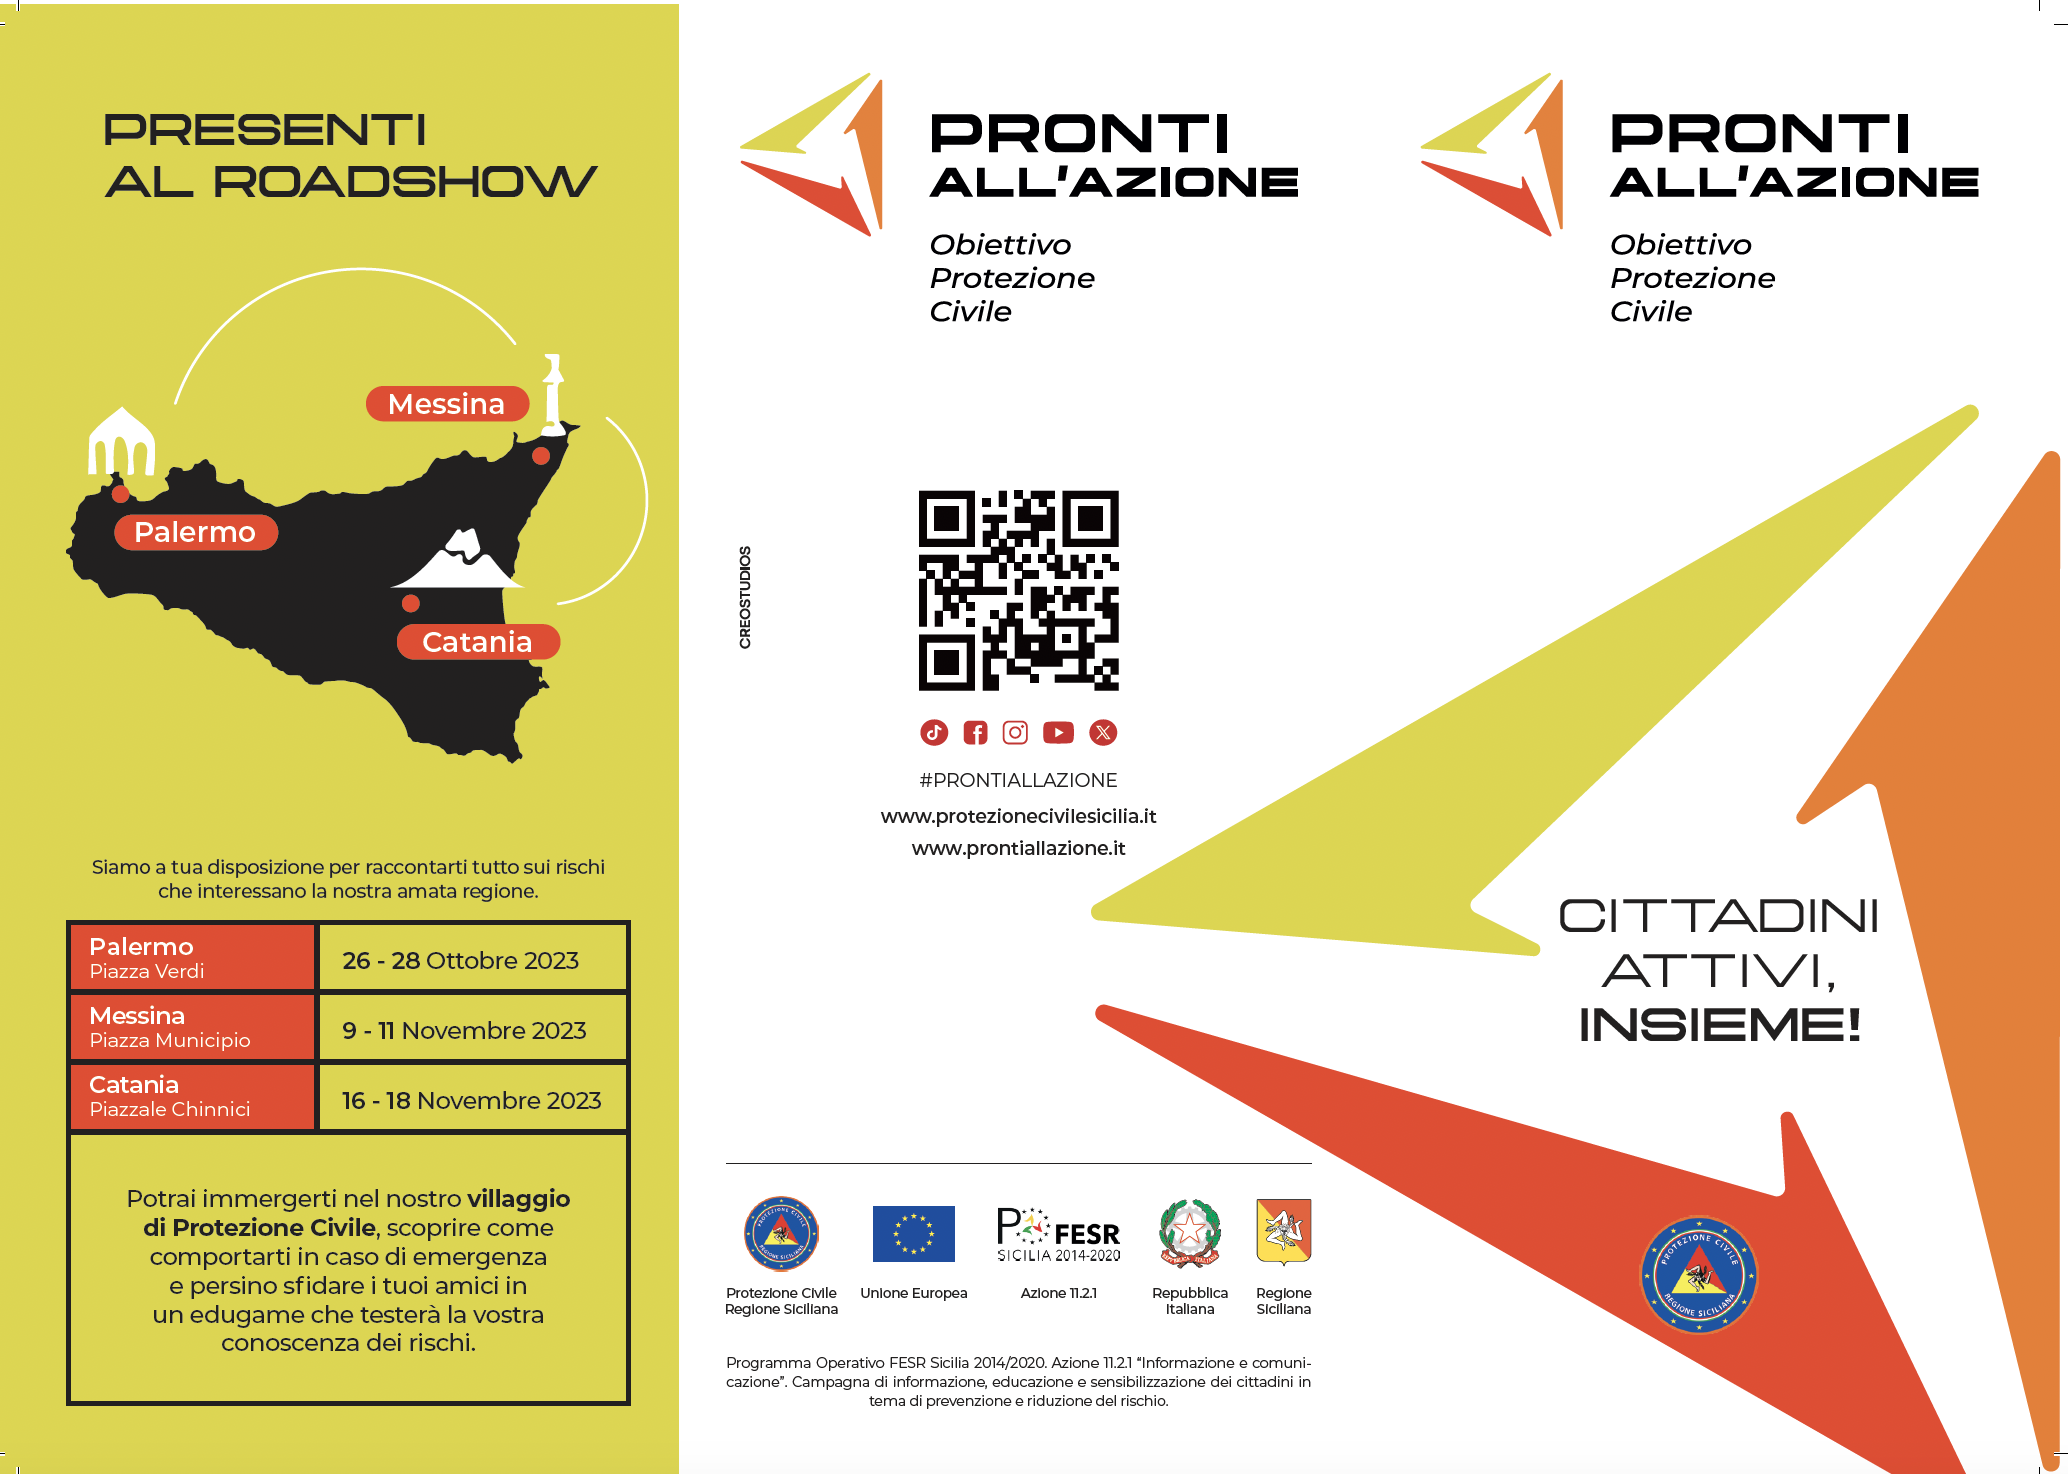 PROTEZIONE CIVILE SICILIANA, PRONTI ALL’AZIONE -  A PALERMO DAL 26 AL 28 OTTOBRE IL PRIMO ROADSHOW